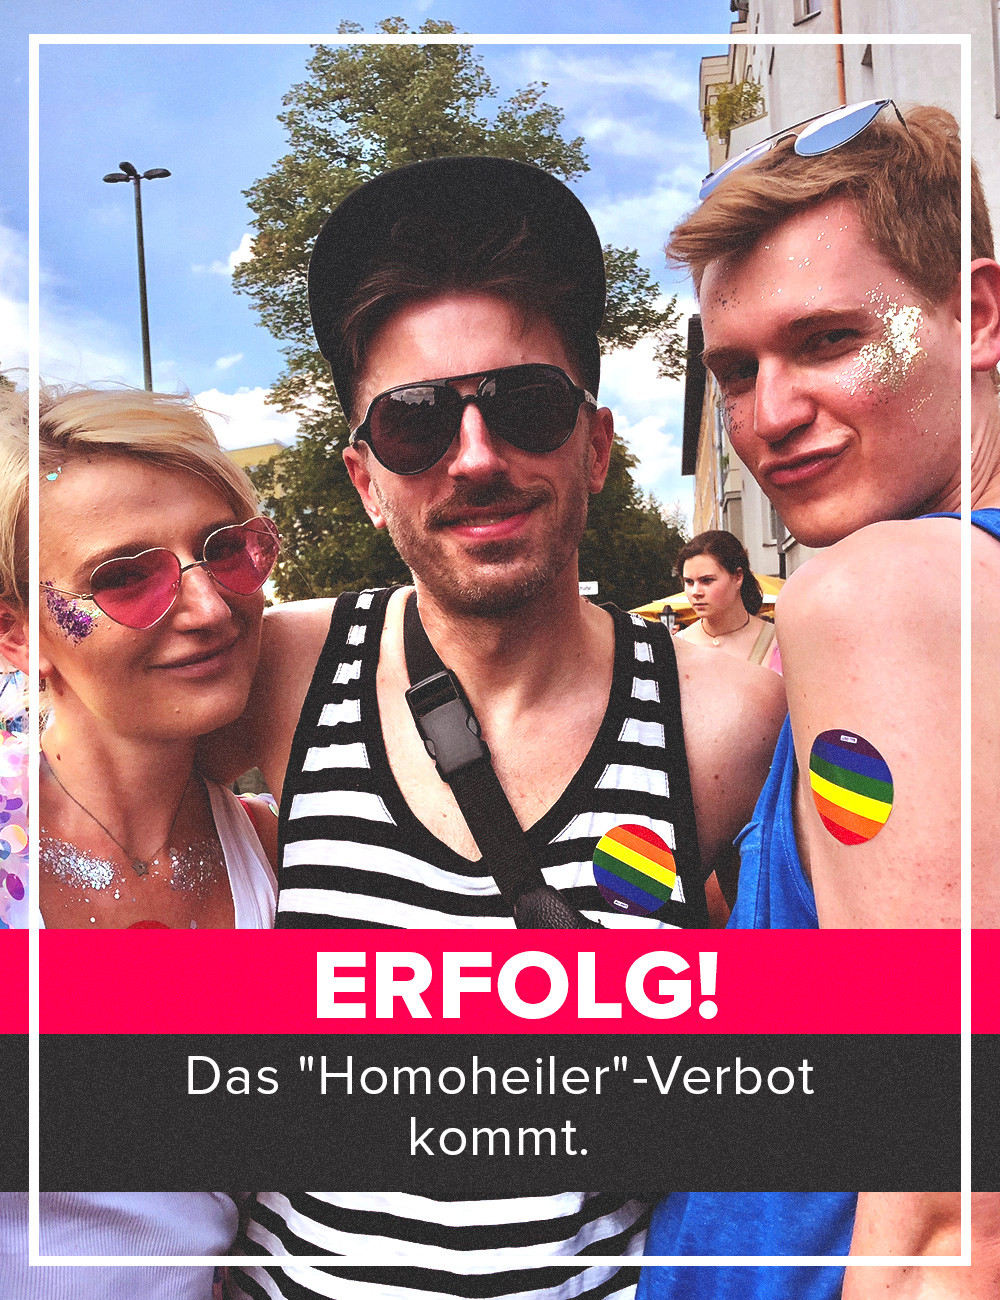 A imagem mostra um grupo de pessoas sorrindo em um dia ensolarado. O texto na imagem está em alemão.